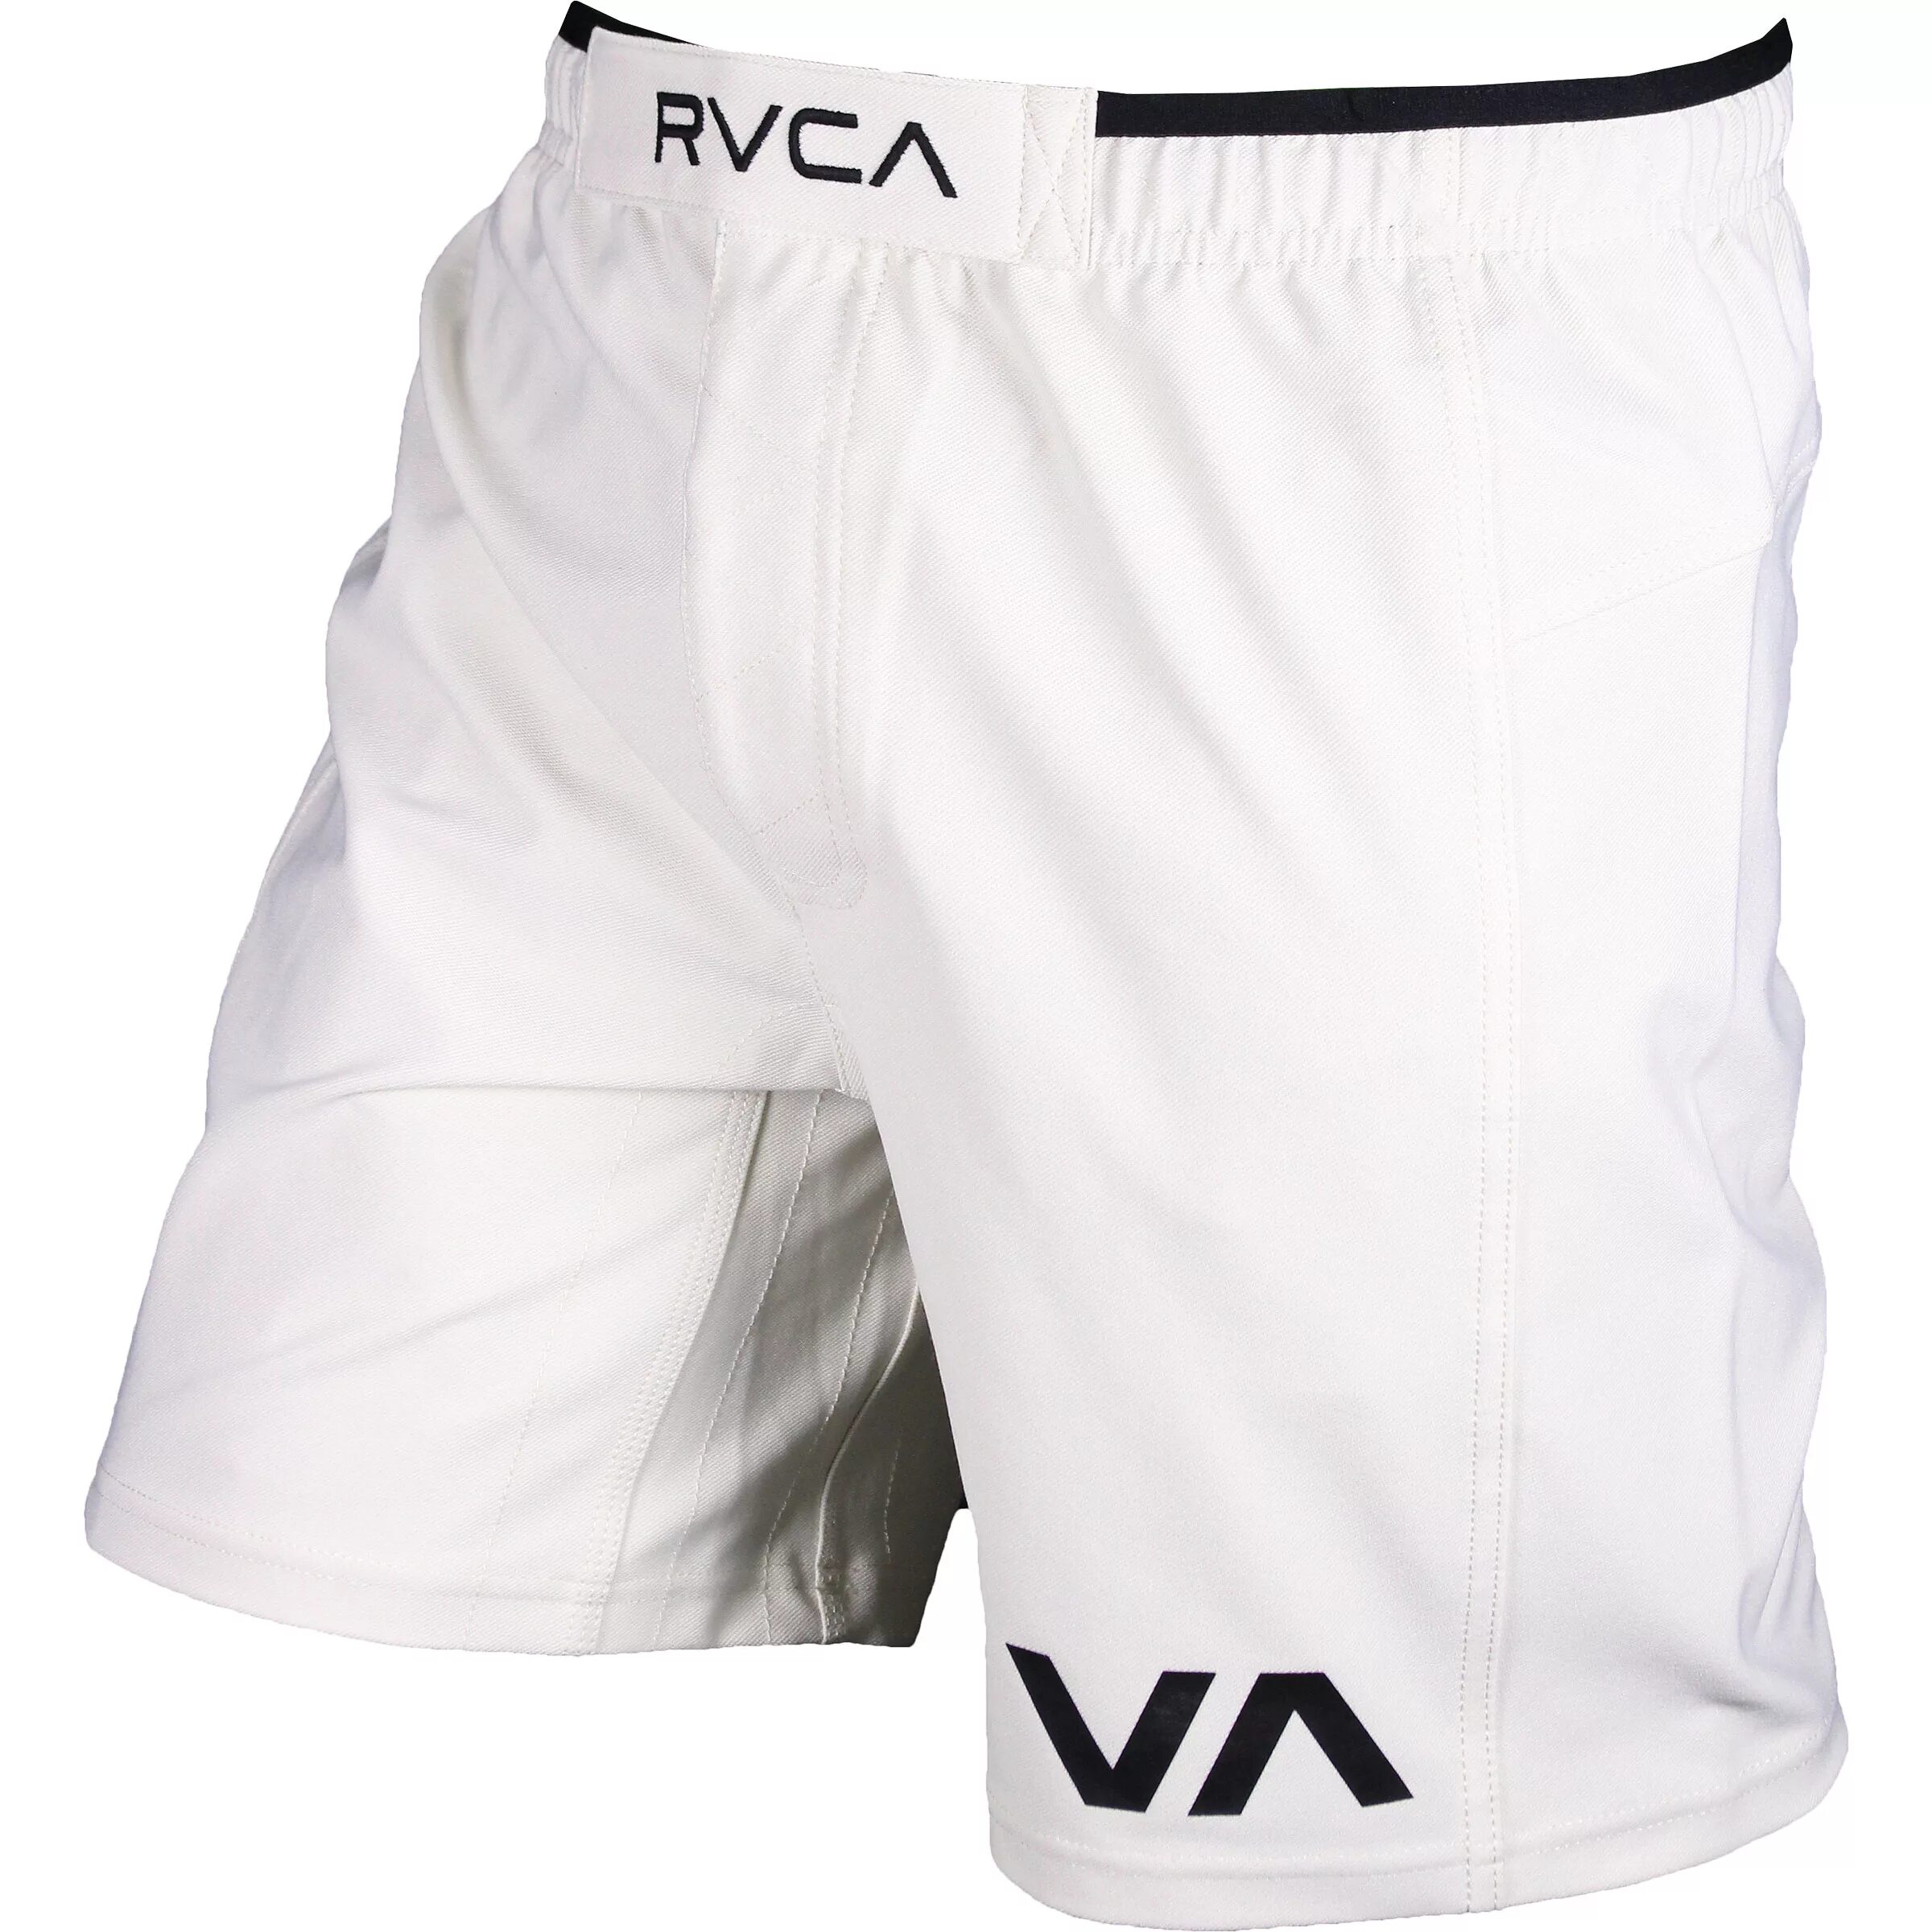 Шорты RVCA Grappler Elastic. RVCA MMA shorts. Шорты ММА белые. Шорты MMA White Gold.